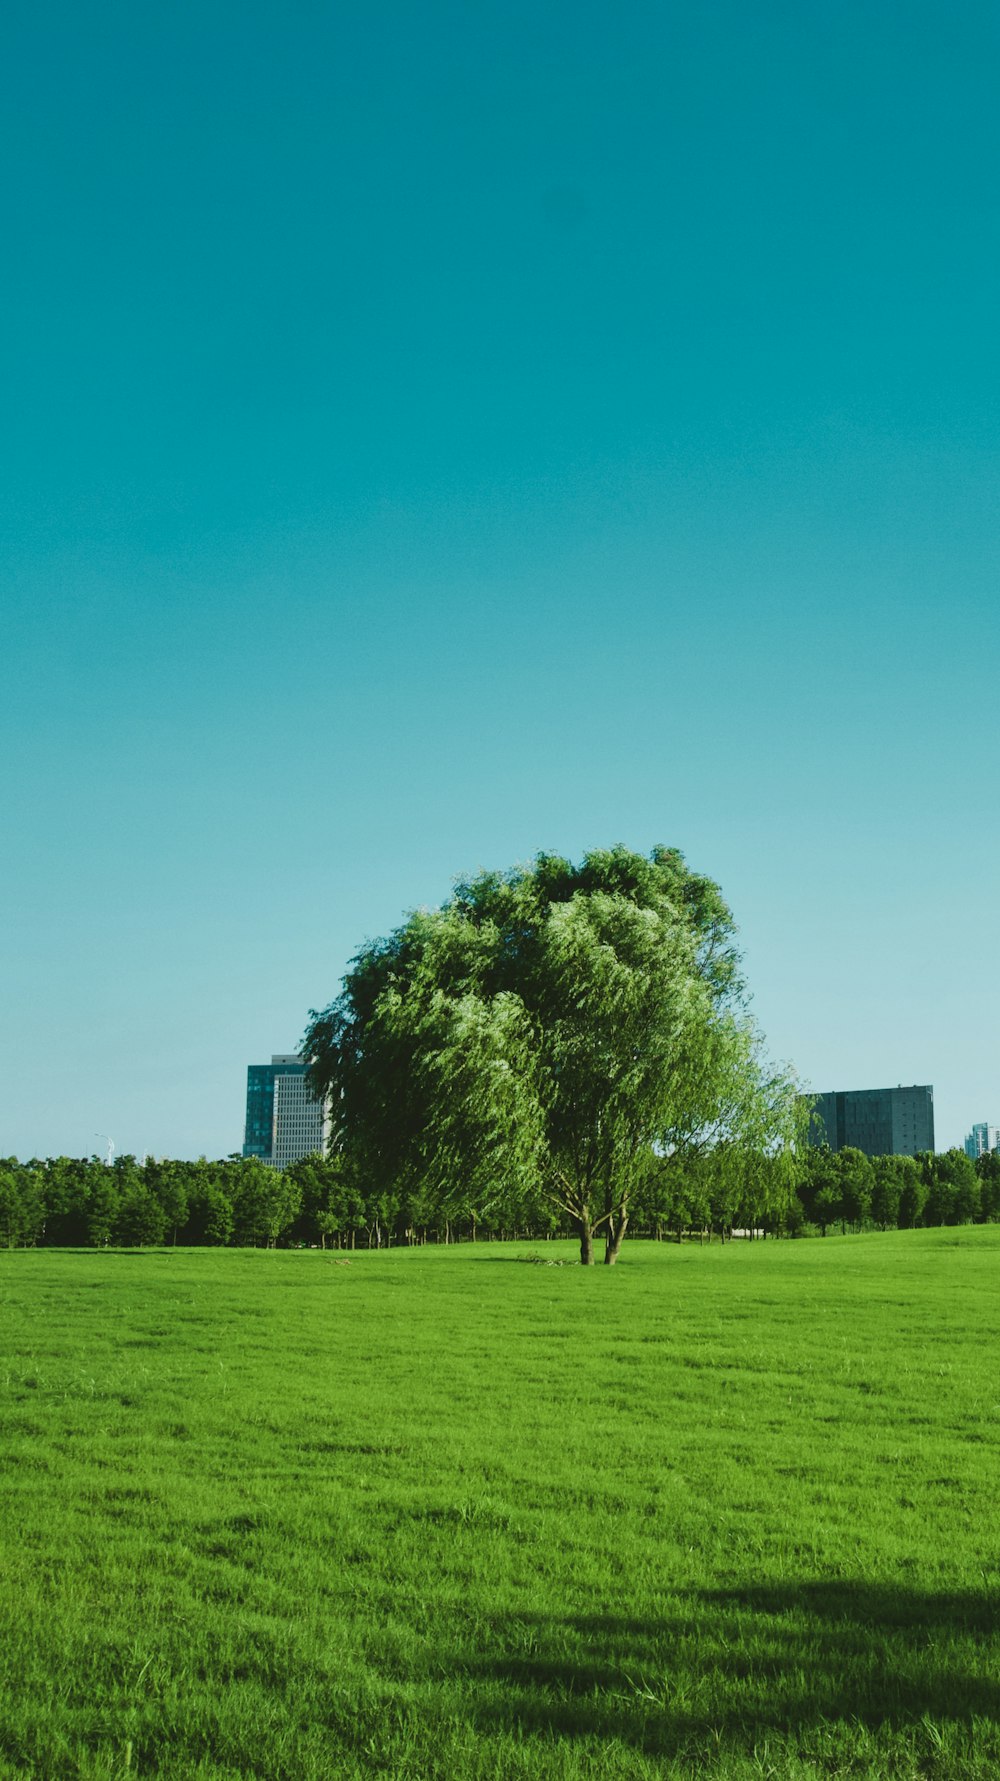 albero verde su campo di erba verde durante il giorno